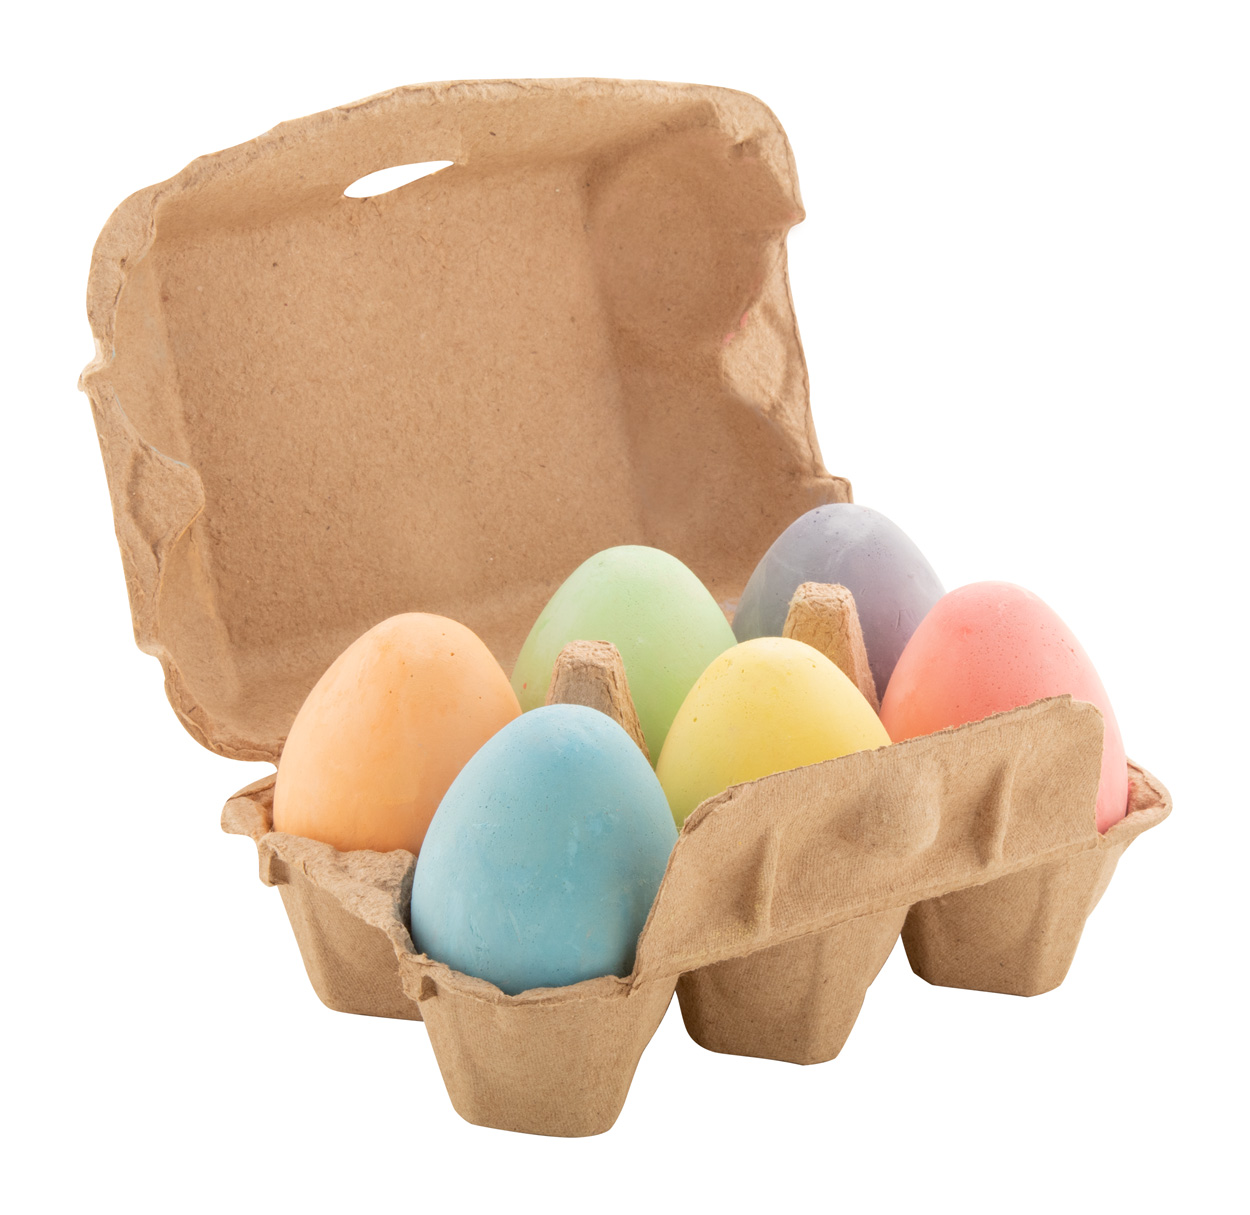 Passover chalk eggs - beige